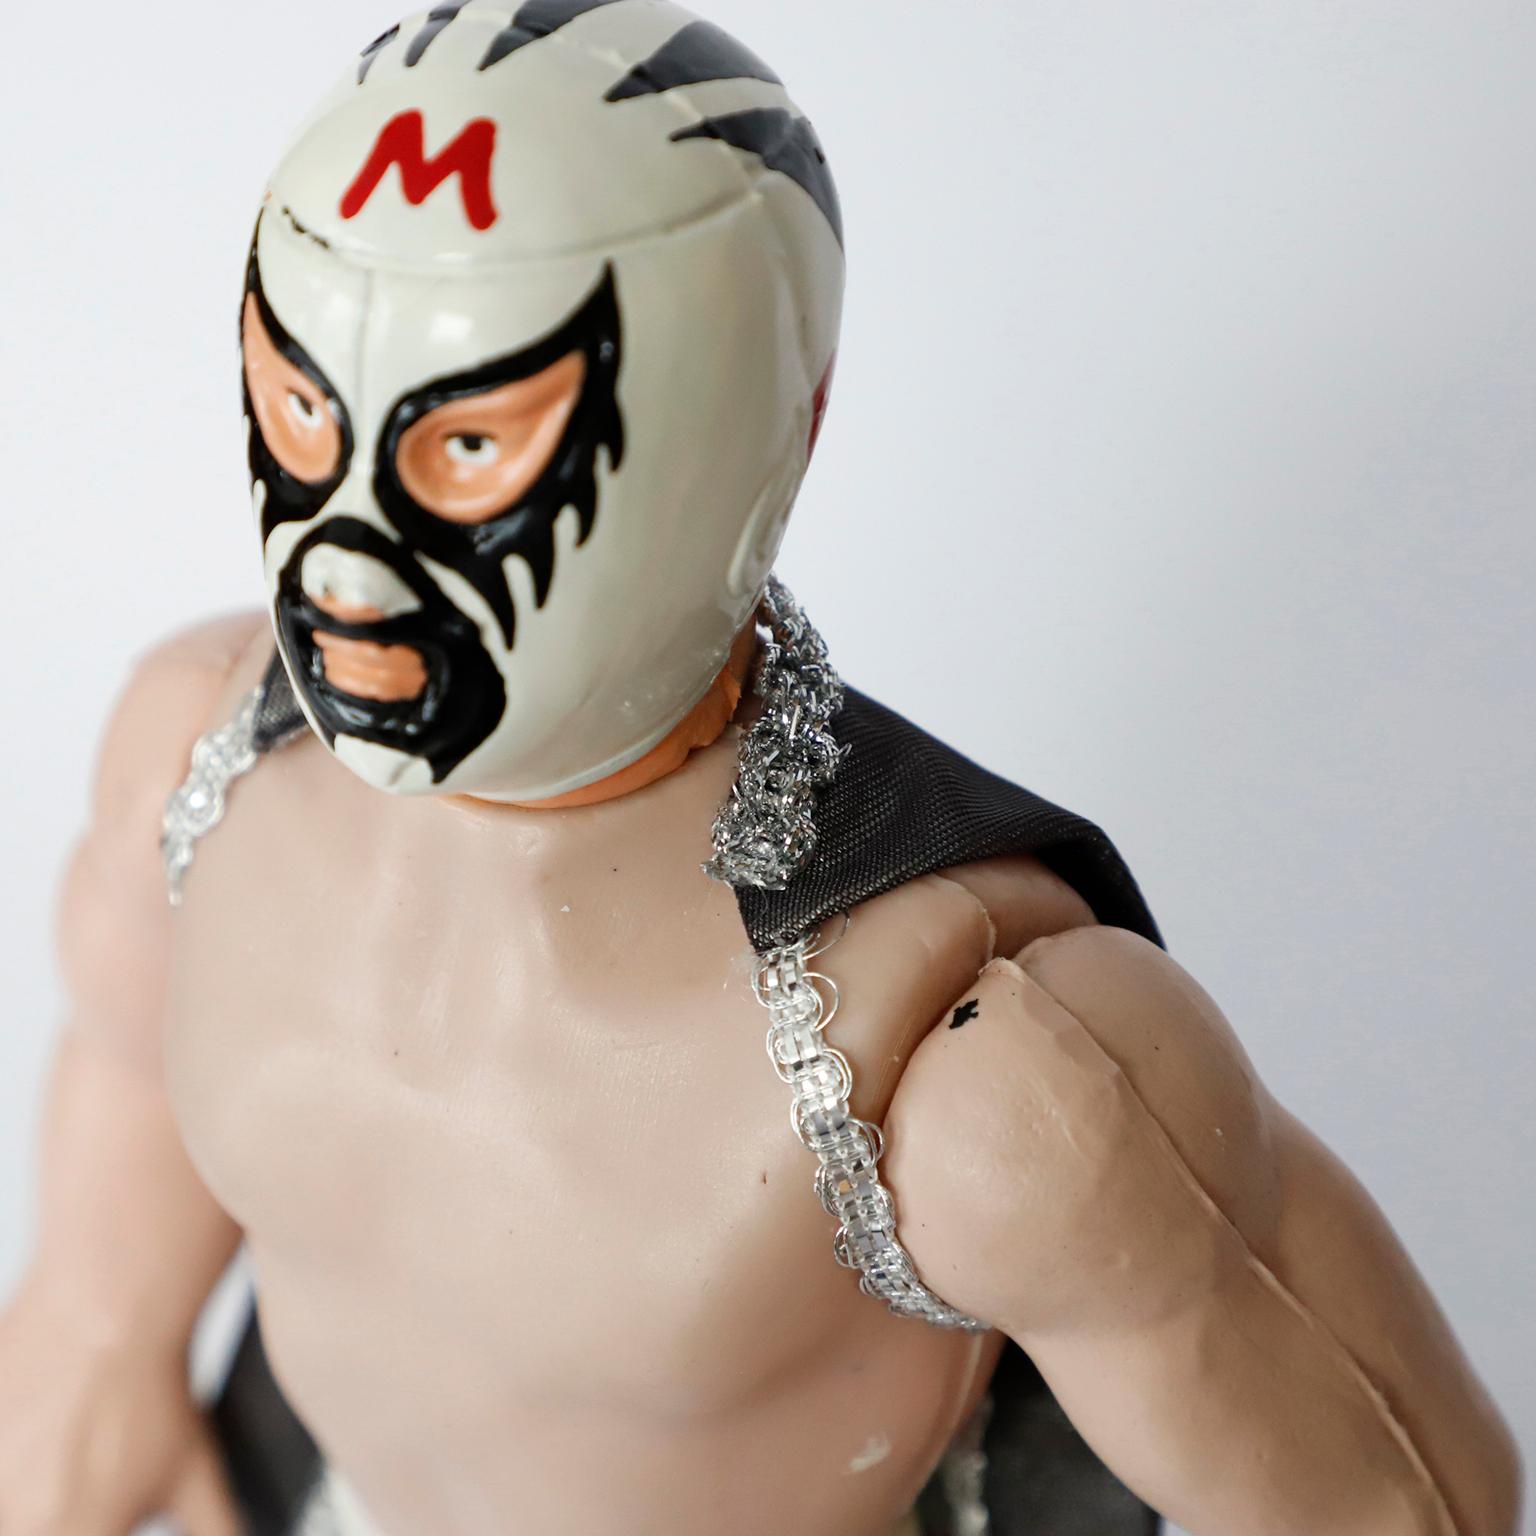 mexican wrestler action figures